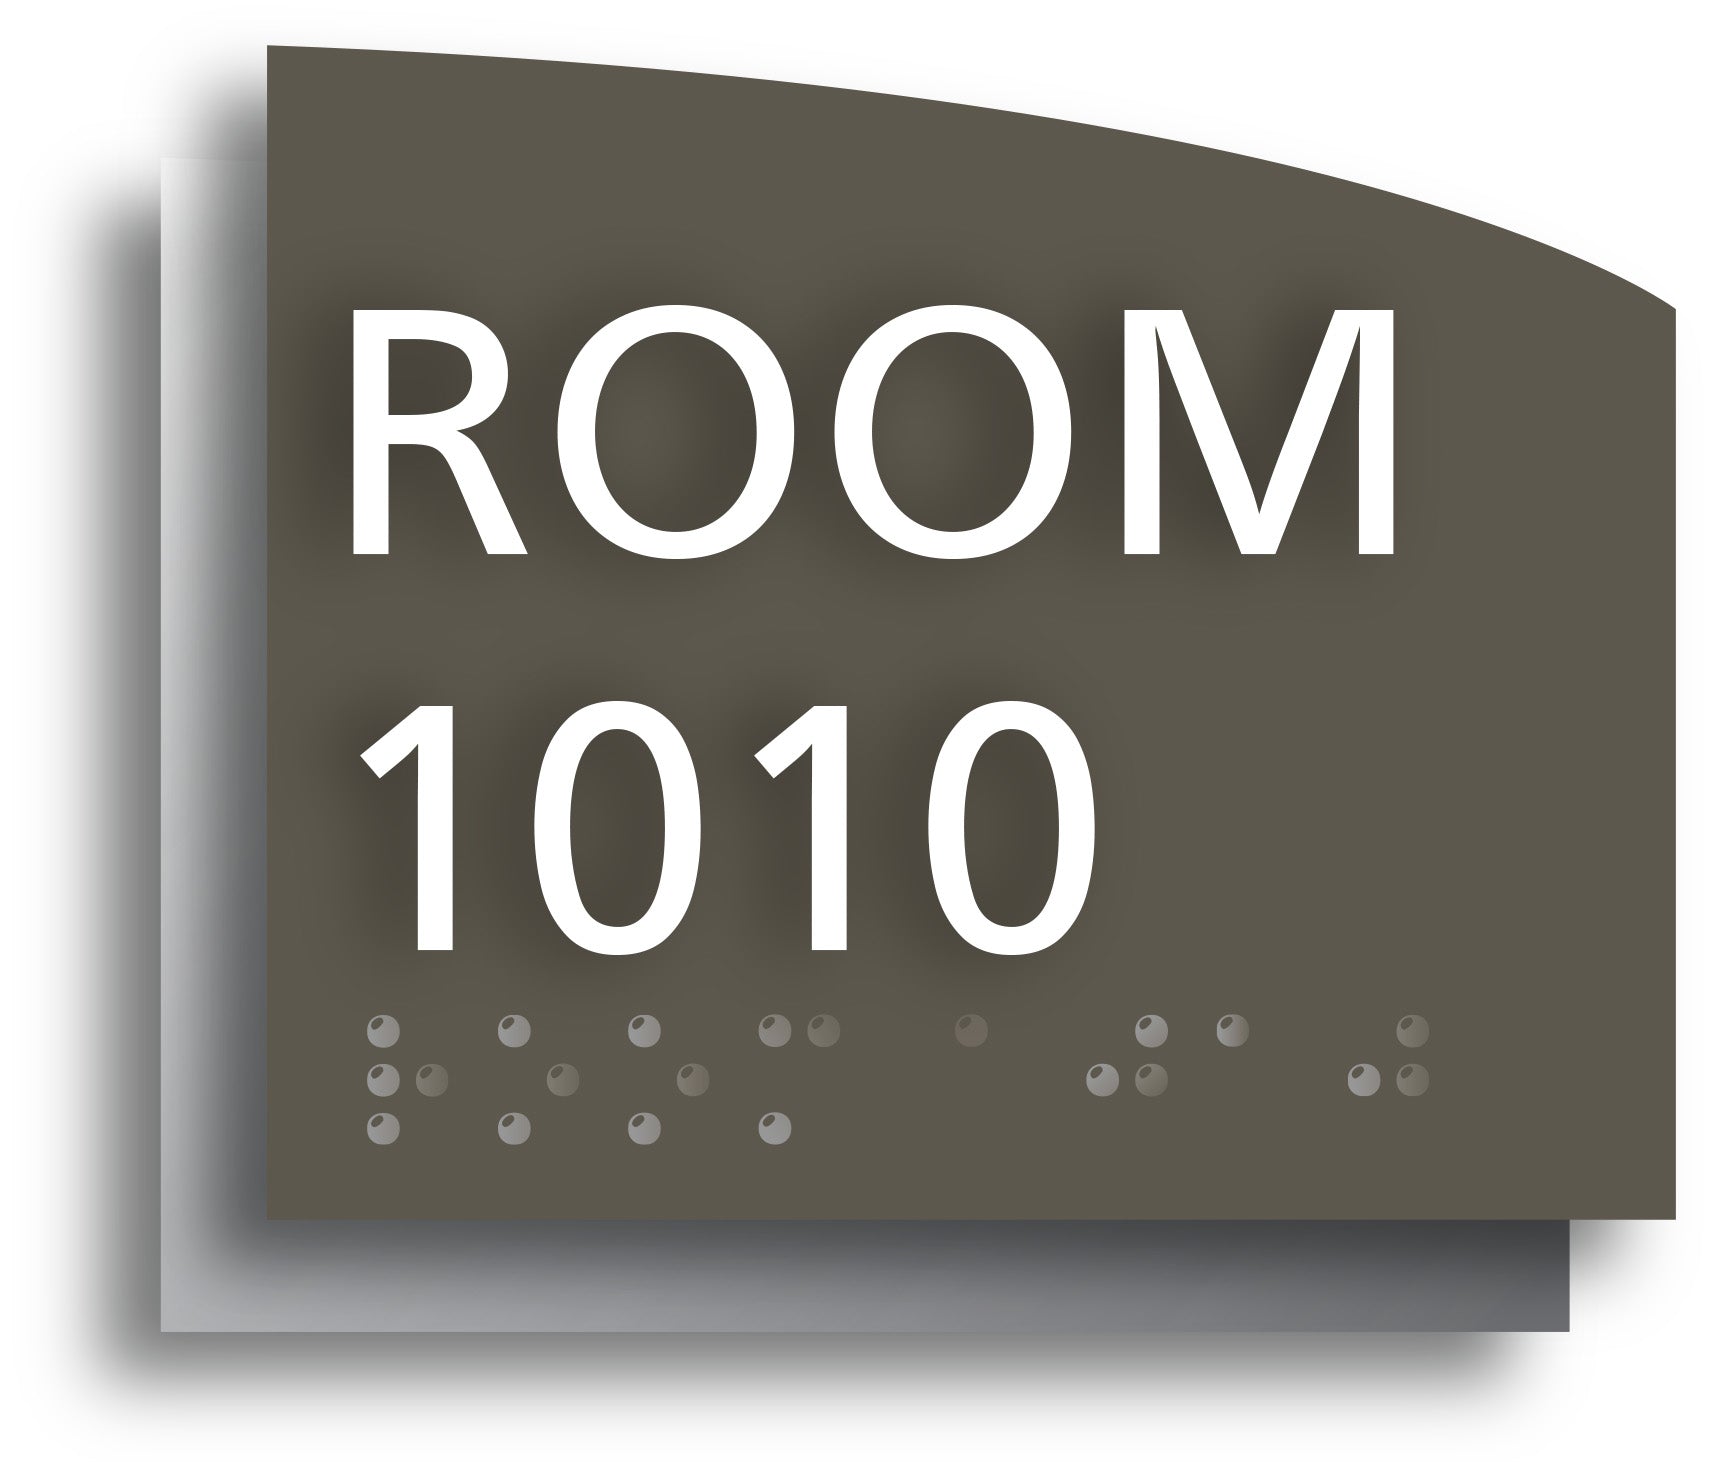 Room 1010